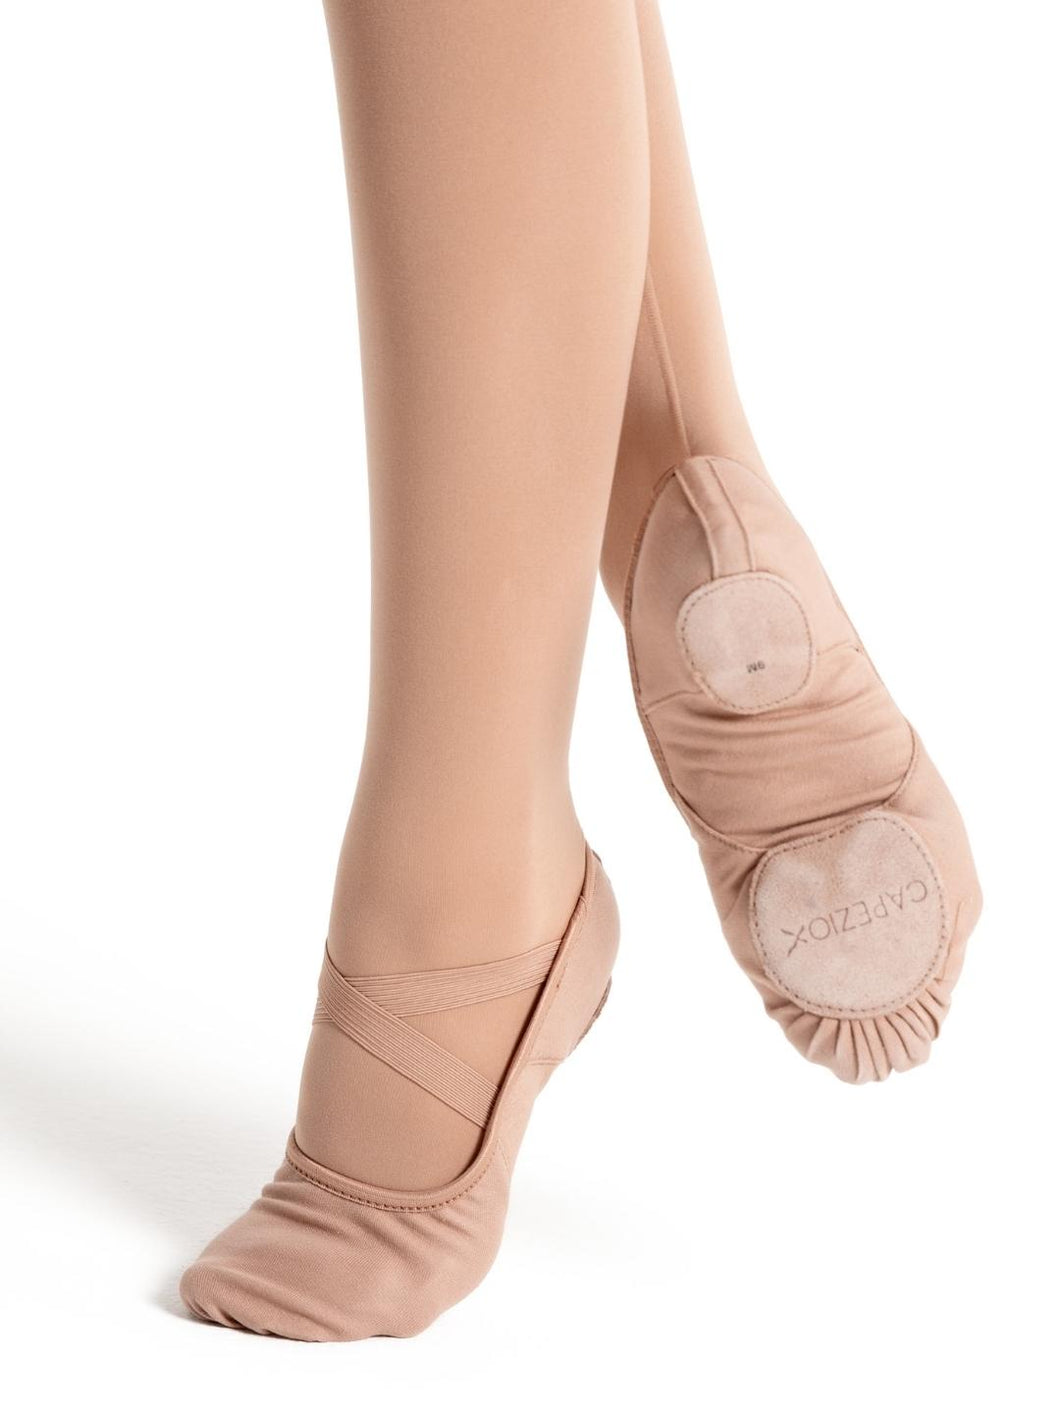 Shoes- Hanami Canvas Ballet Shoe